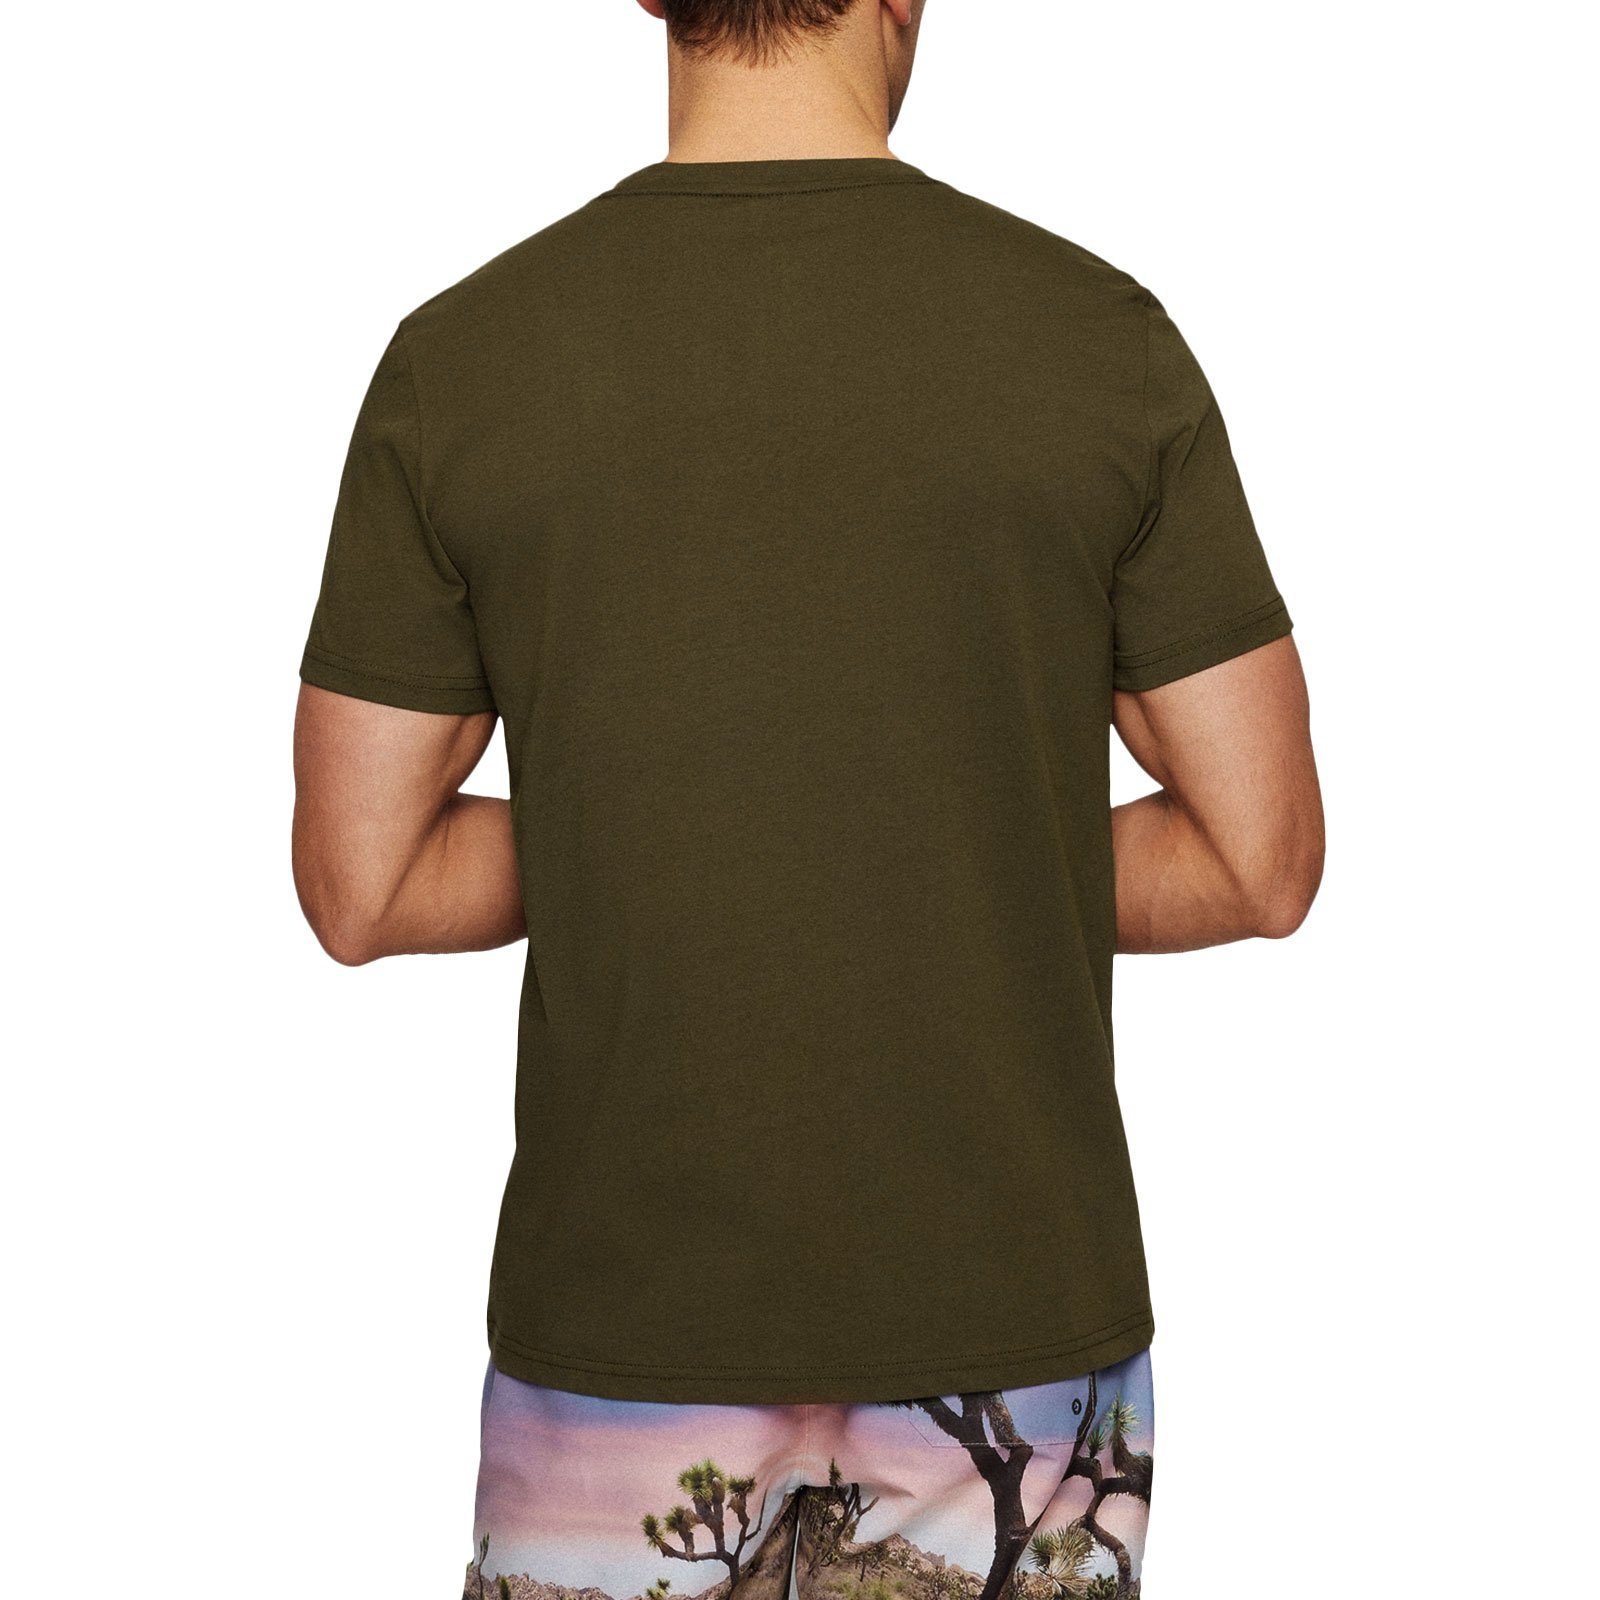 BOSS T-Shirt RN Sun Protection green auf großem Brust Markenprint der mit 308 dark